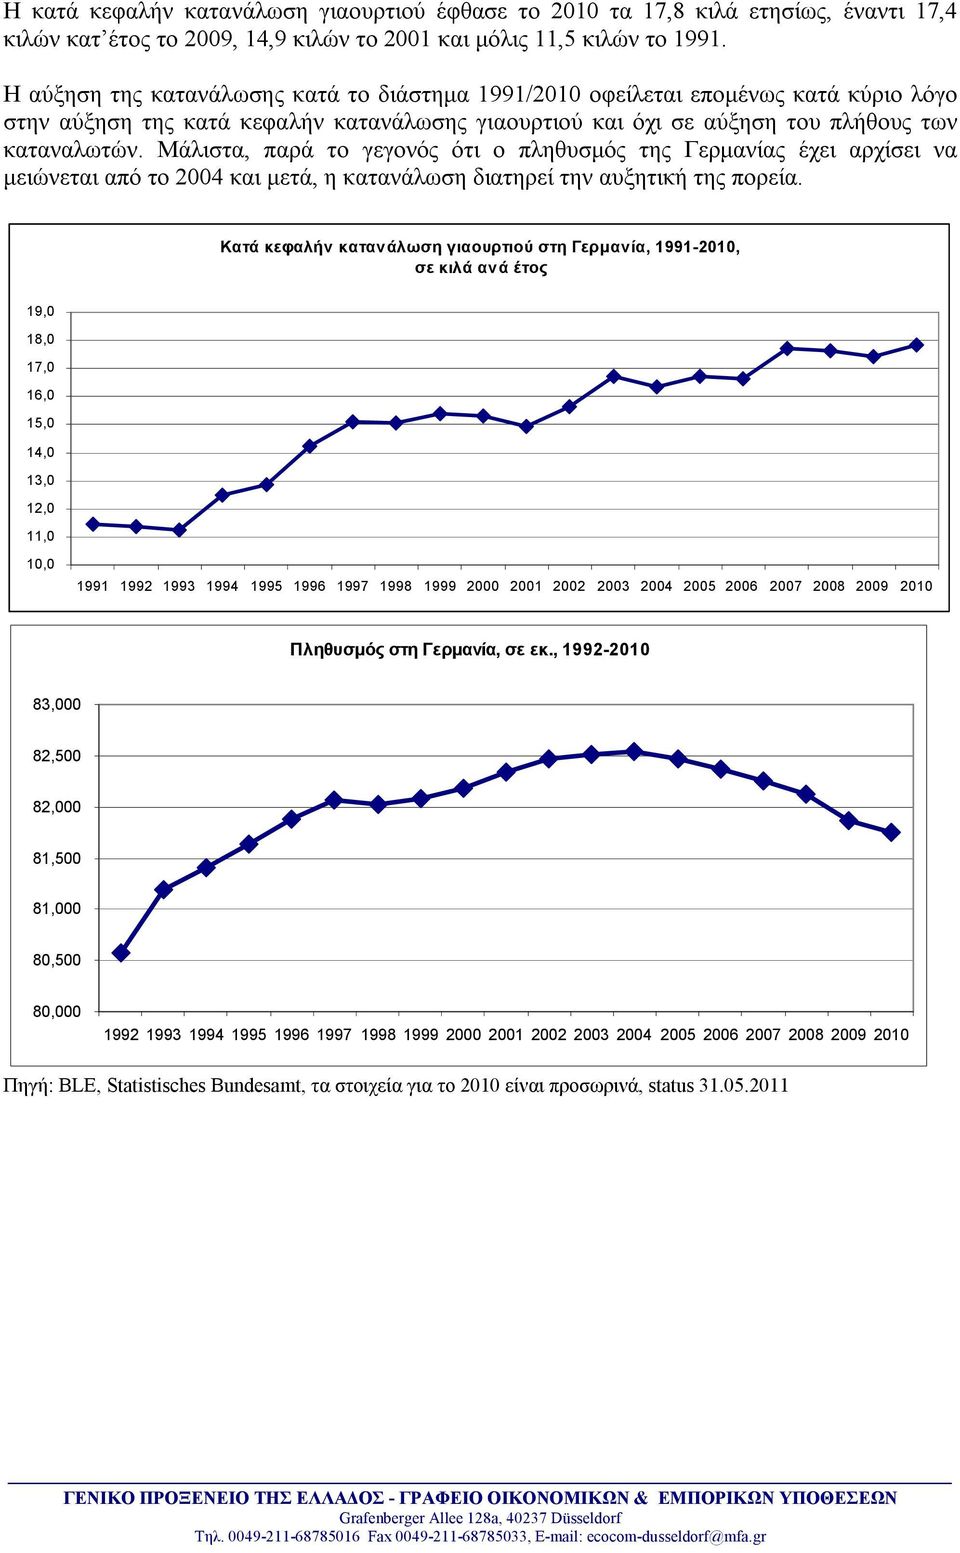 Μάλιστα, παρά το γεγονός ότι ο πληθυσμός της Γερμανίας έχει αρχίσει να μειώνεται από το 2004 και μετά, η κατανάλωση διατηρεί την αυξητική της πορεία.